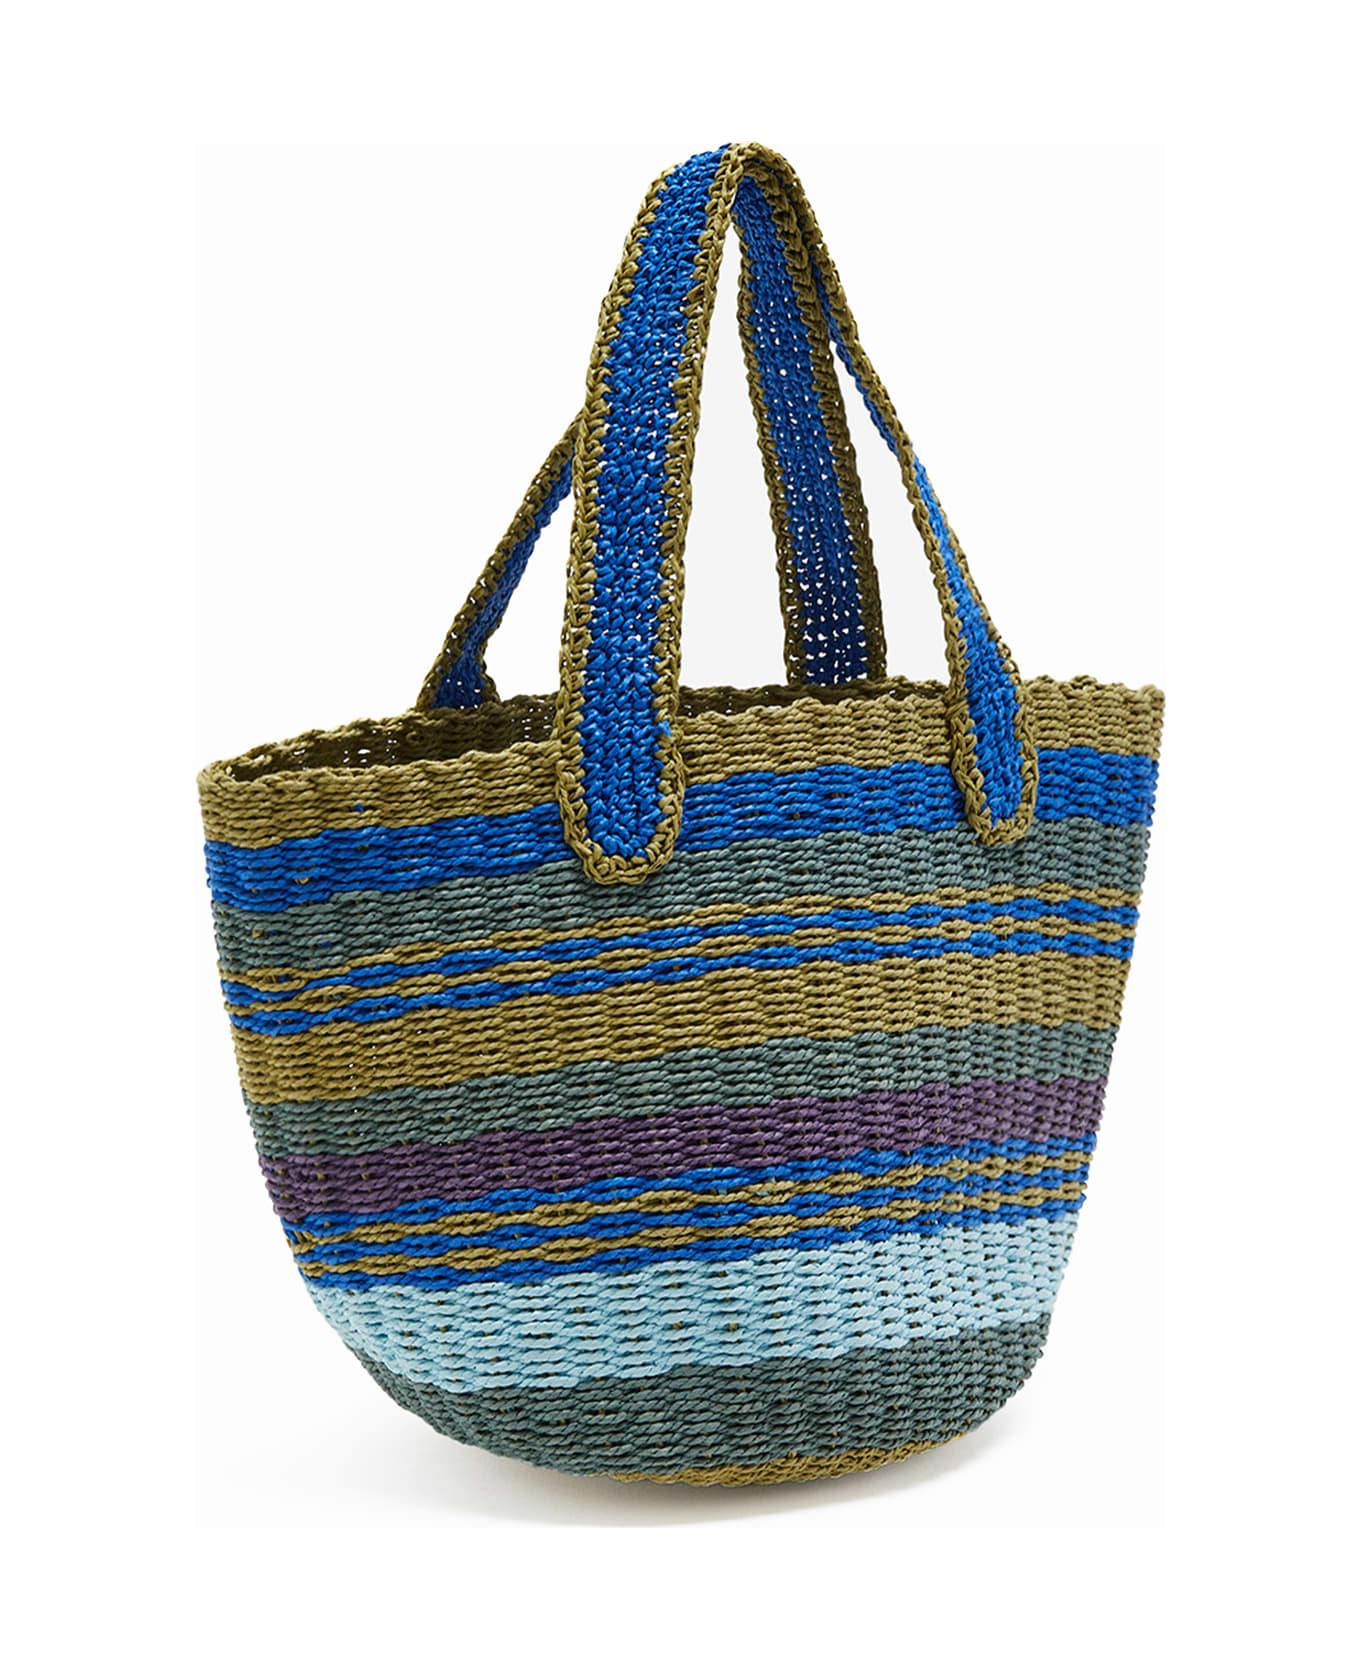 Malìparmi Shopping Bag In Hand-woven Multicolored Raffia - BLU/AZZURRO/VERDE